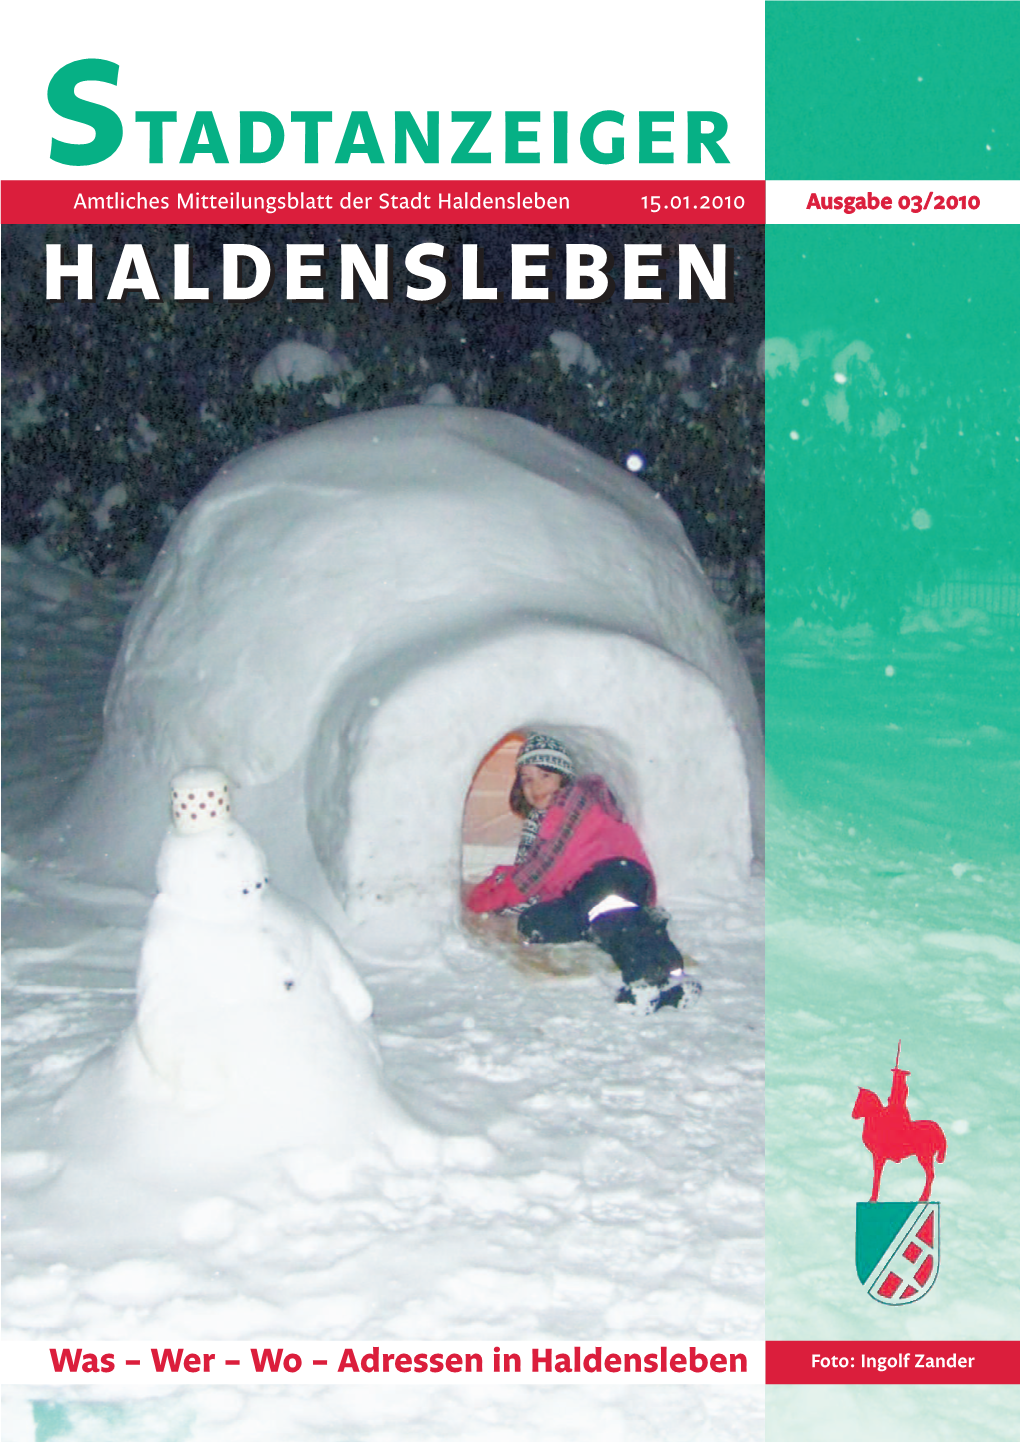 STADTANZEIGER Amtliches Mitteilungsblatt Der Stadt Haldensleben 15.01.2010 Ausgabe 03/2010 HHAALLDDEENNSSLLEEBBEENN